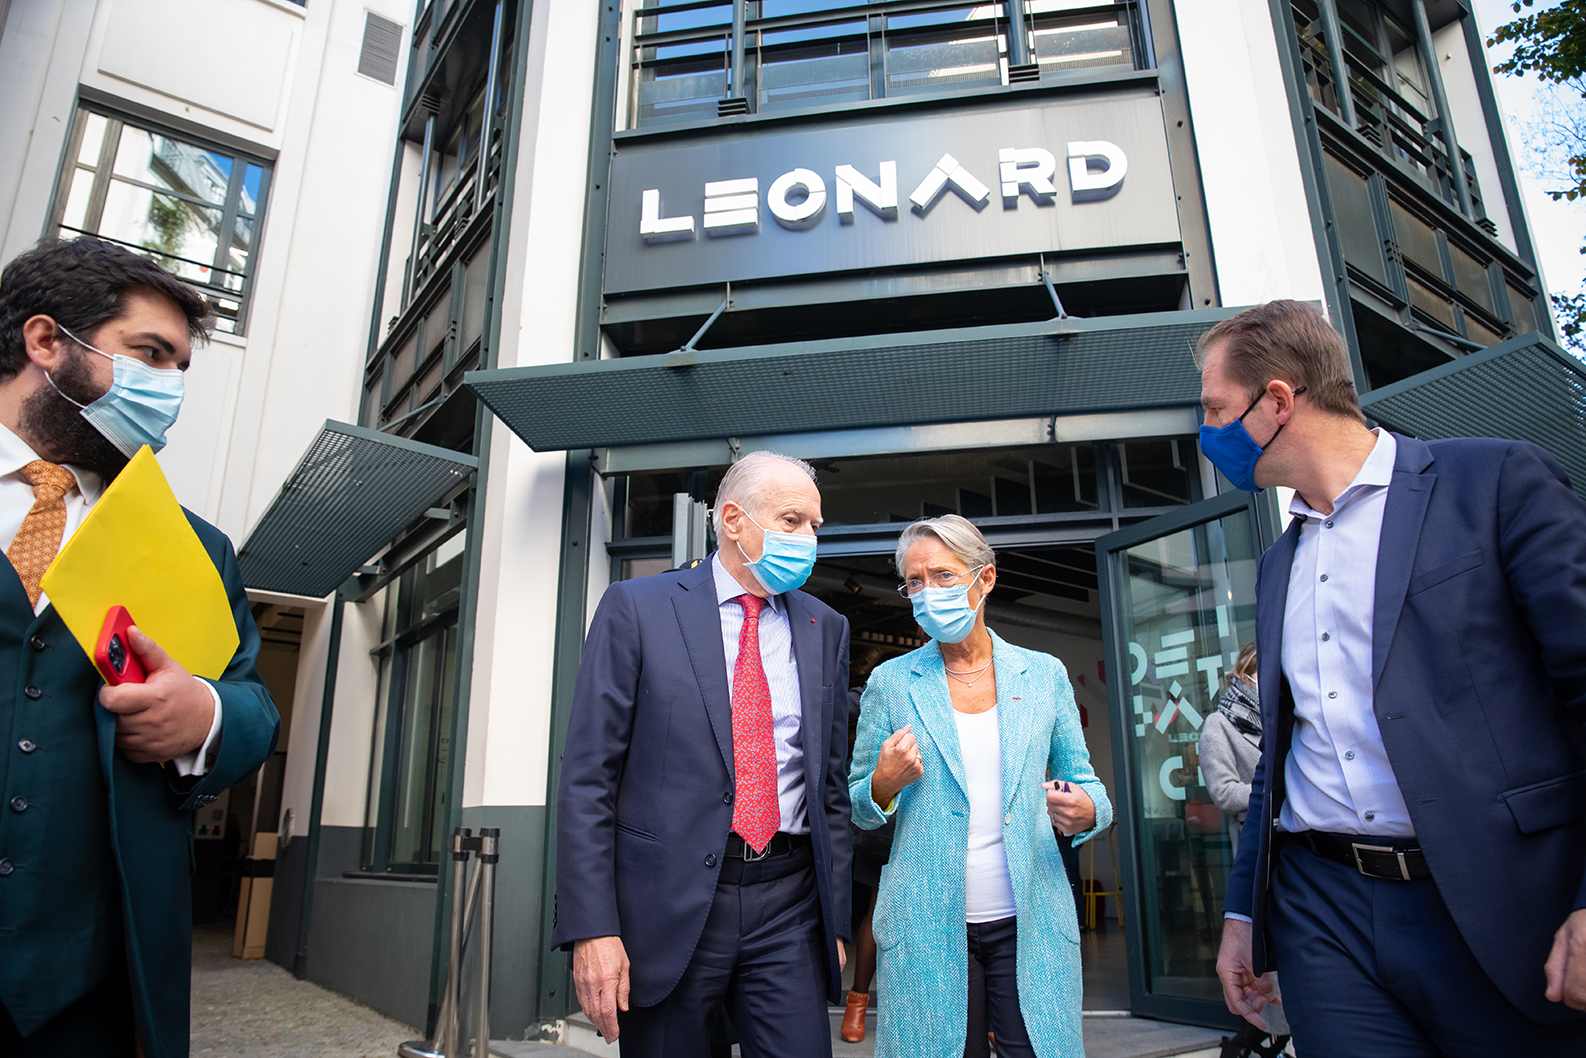 Les nouvelles ambitions de la communauté « Les entreprises s’engagent » à Leonard:Paris